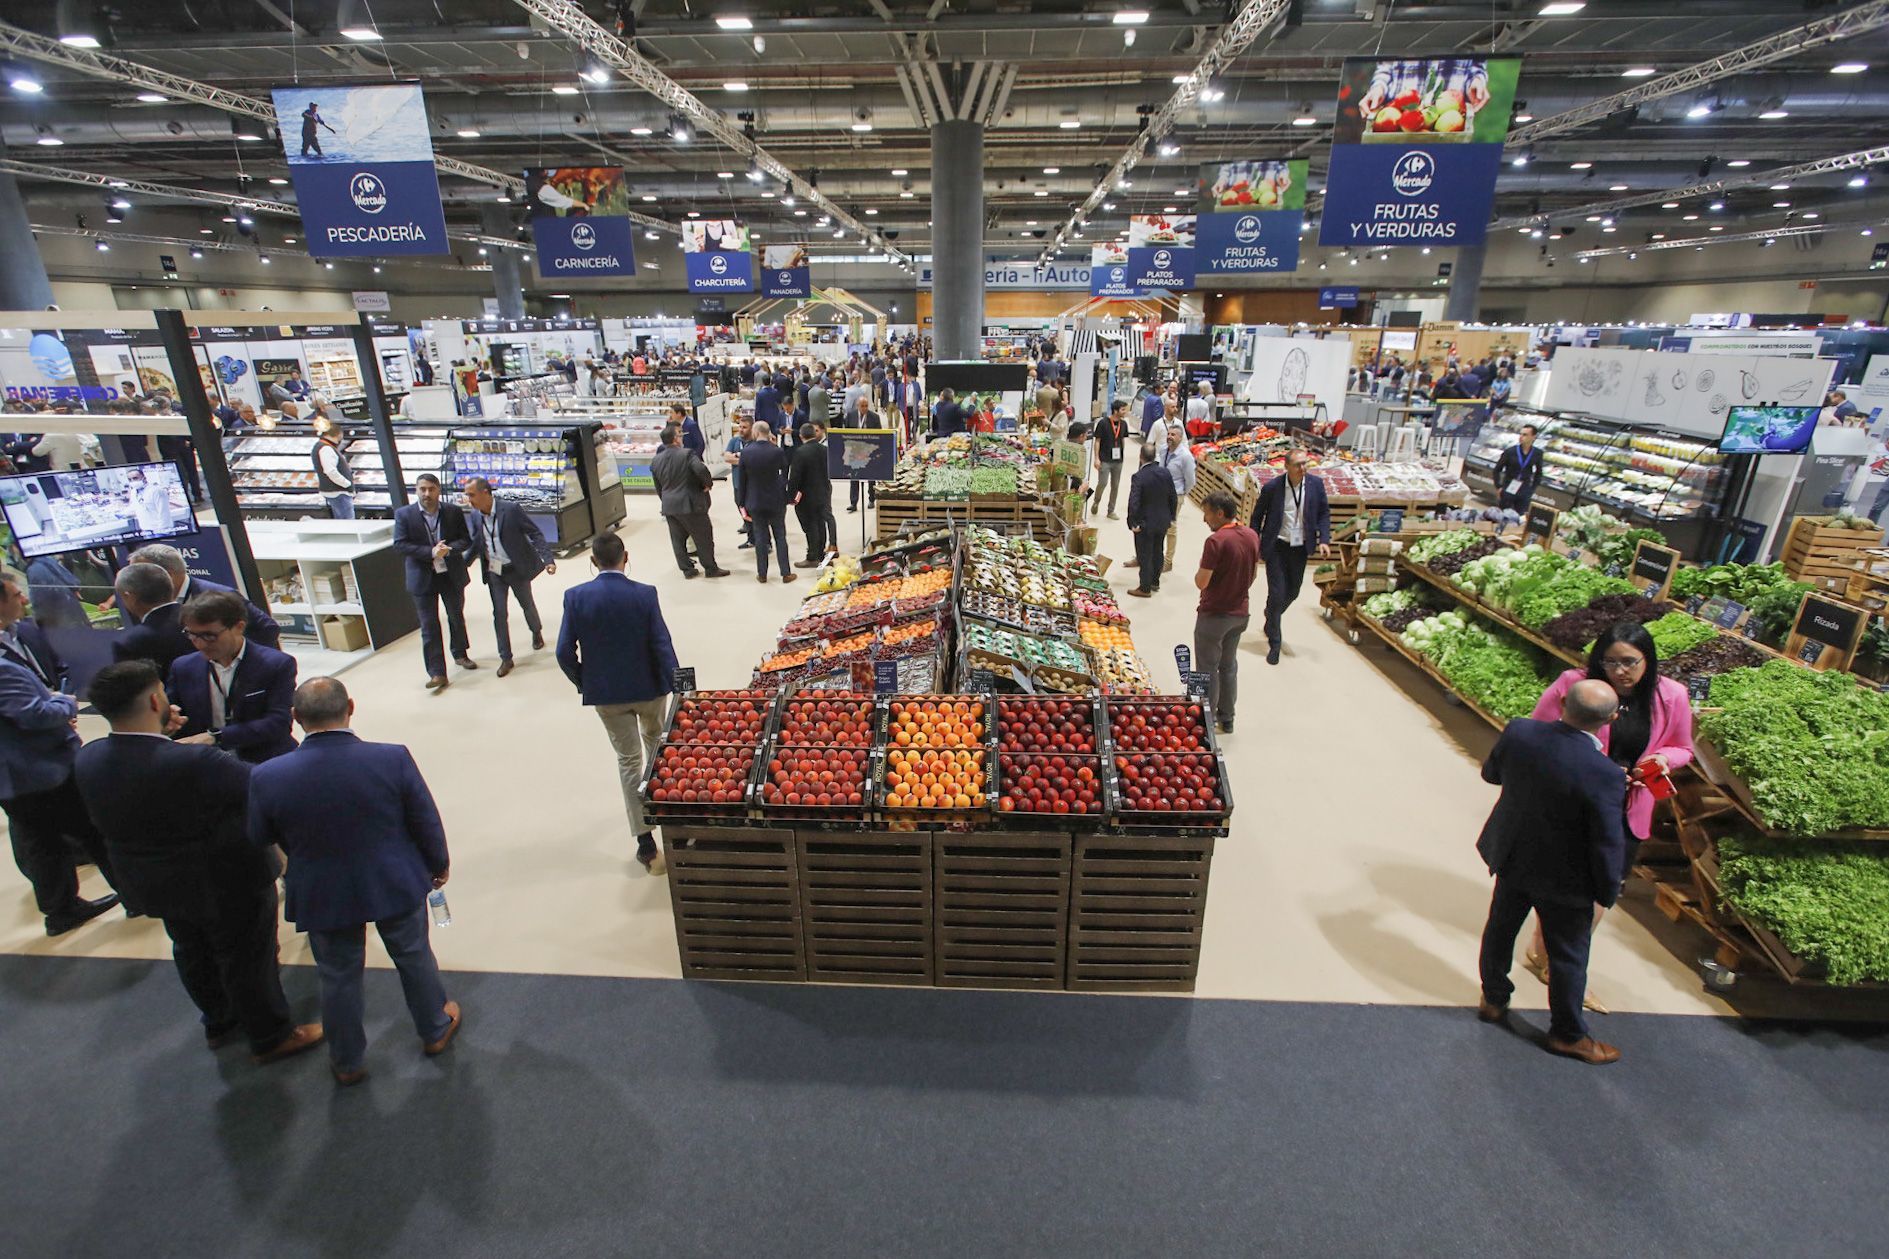 Imagen de un supermercado de la cadena Carrefour